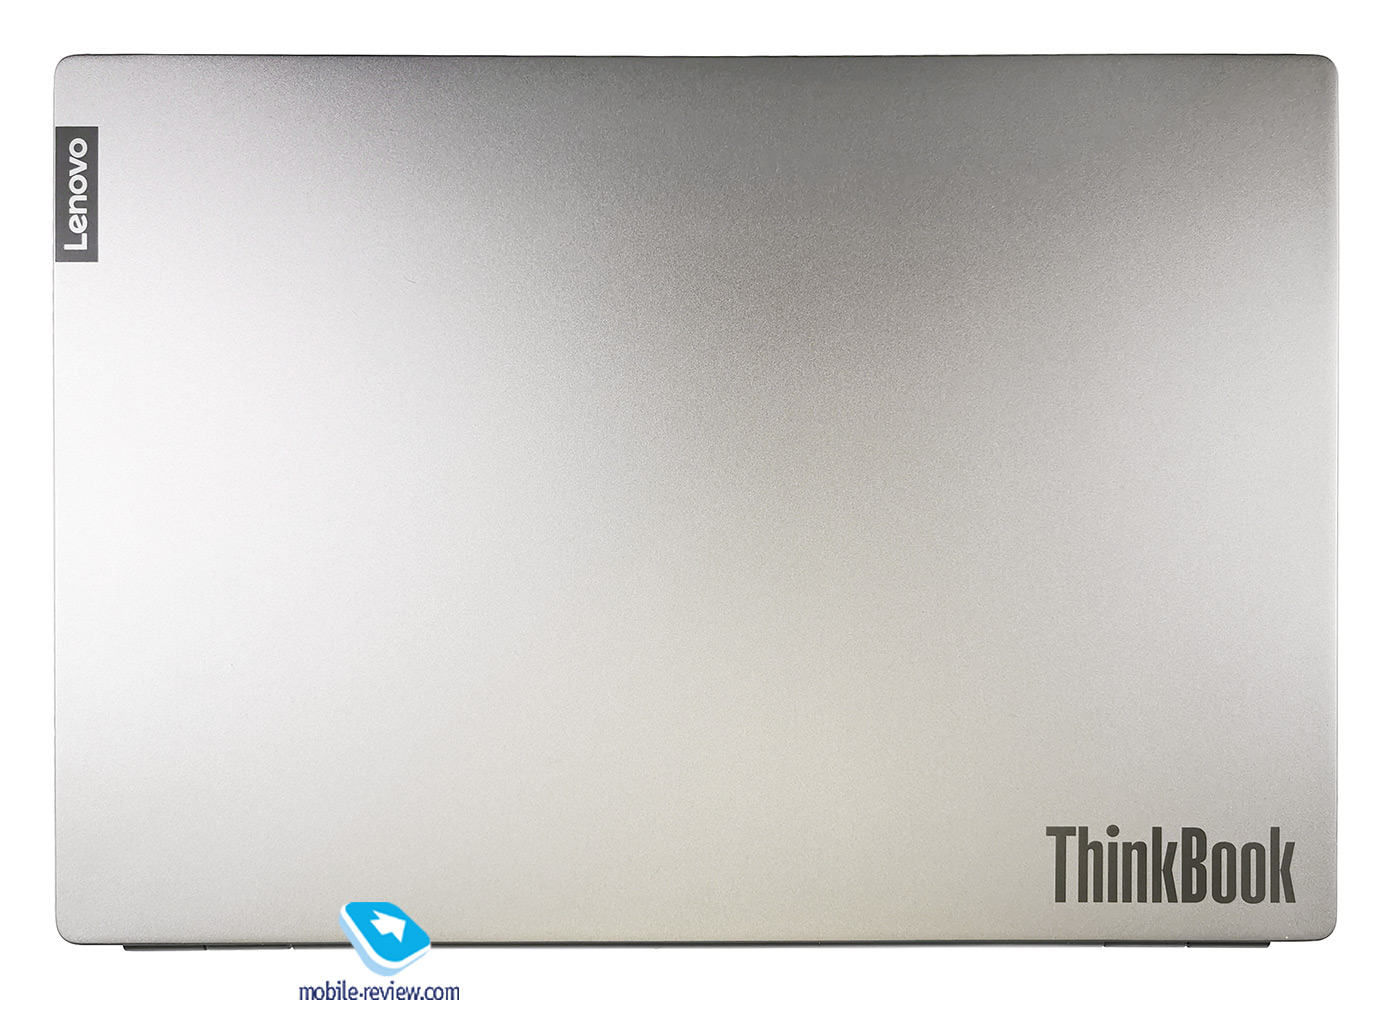  ThinkPad,  ThinkBook!